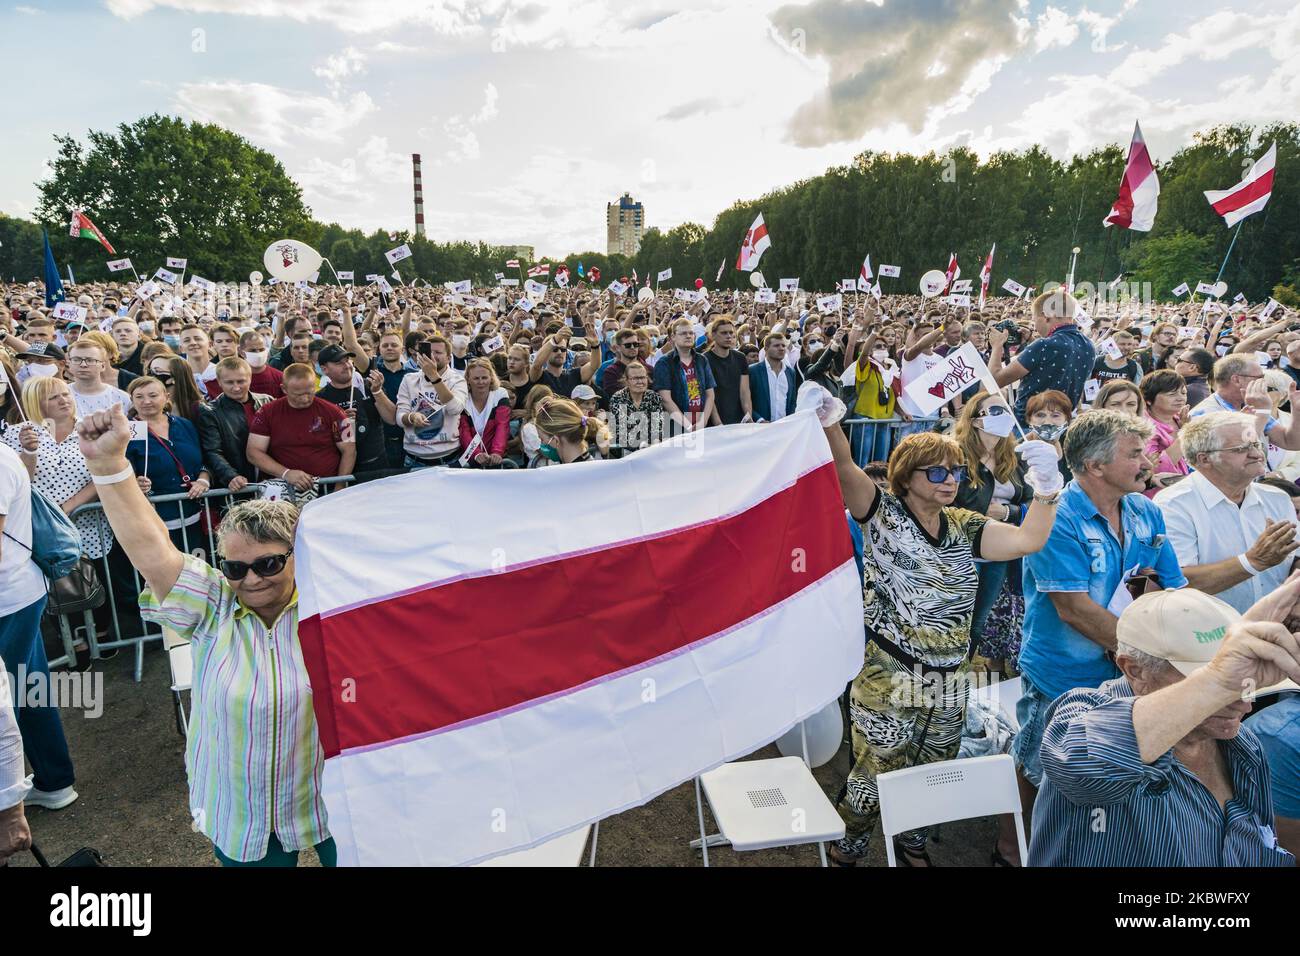 Les femmes détiennent l'ancien drapeau du Bélarus, symbole de l'opposition au gouvernement Loukachenko, lors d'une réunion à Minsk de Svetlana Tikhanovskaya, candidate à la présidence aux élections du Bélarus en 2020. (Photo de Celestino Arce/NurPhoto) Banque D'Images